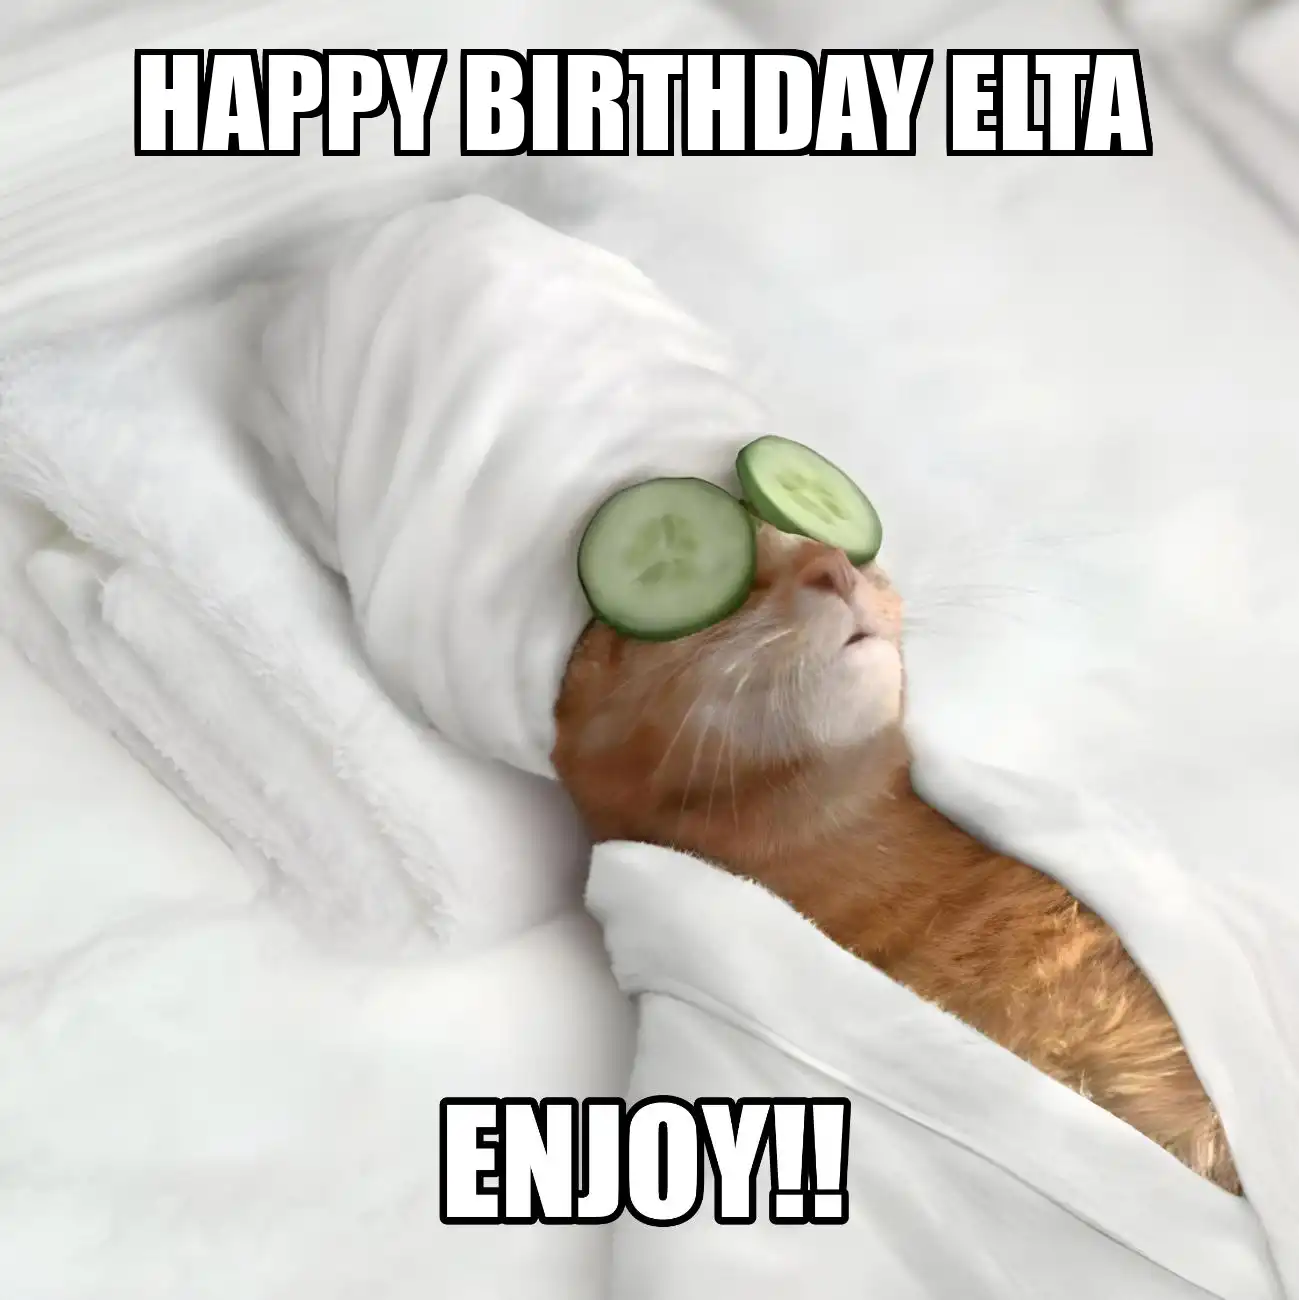 Happy Birthday Elta Enjoy Cat Meme